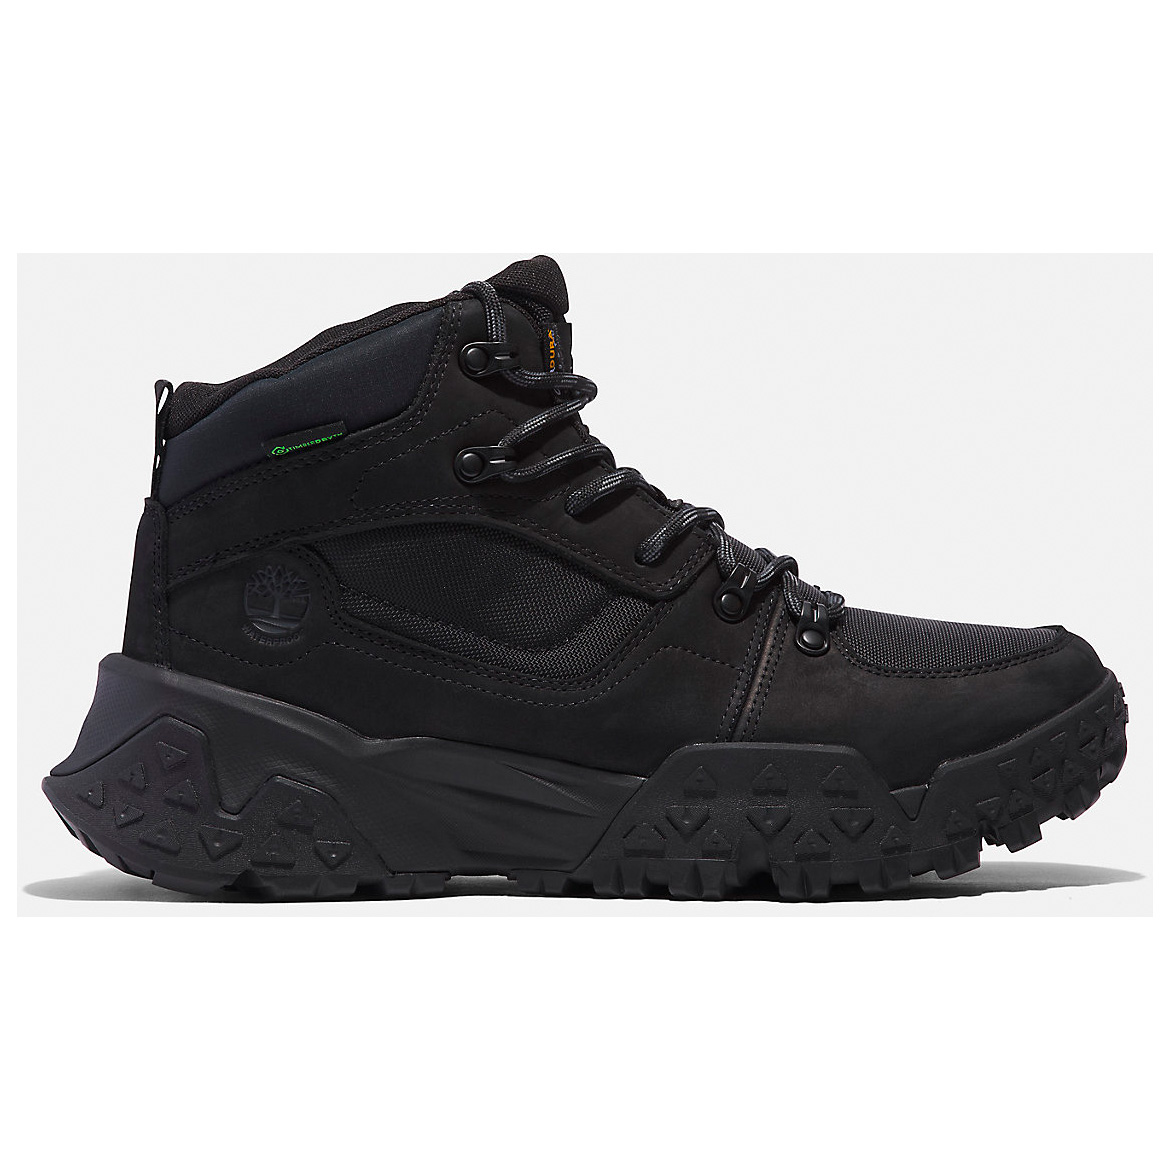 Ботинки для прогулки Timberland Motion Scramble Mid Lace Up Waterproof Boot, цвет Black Nubuck цена и фото